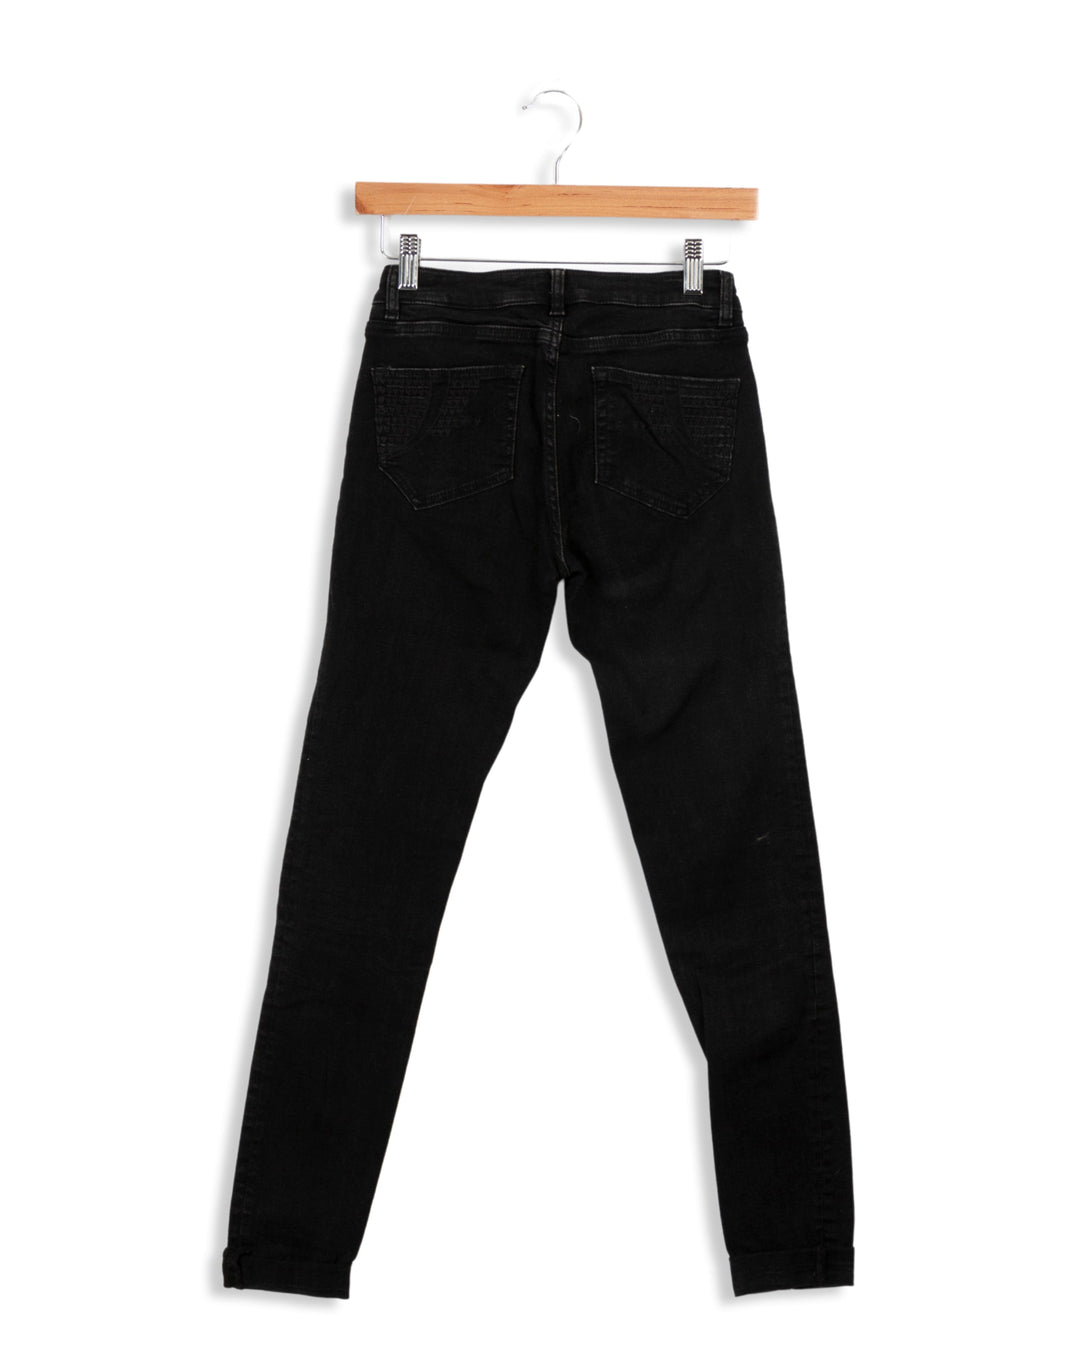 Schwarze Jeans - 36